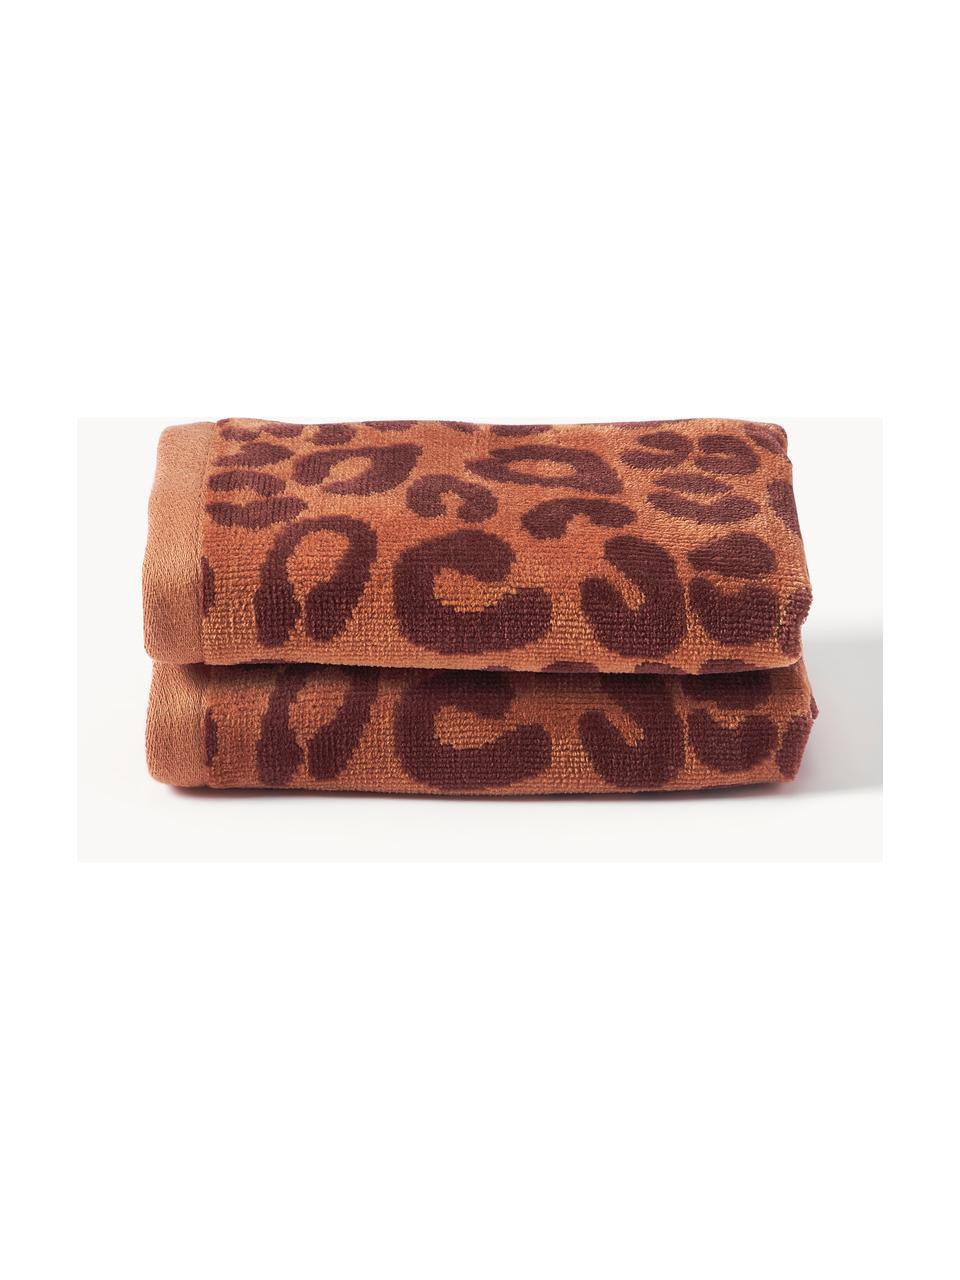 Handdoek Leo in verschillende formaten, 2 stuks, Terracotta, donkerbruin, Handdoek, B 50 x L 100 cm